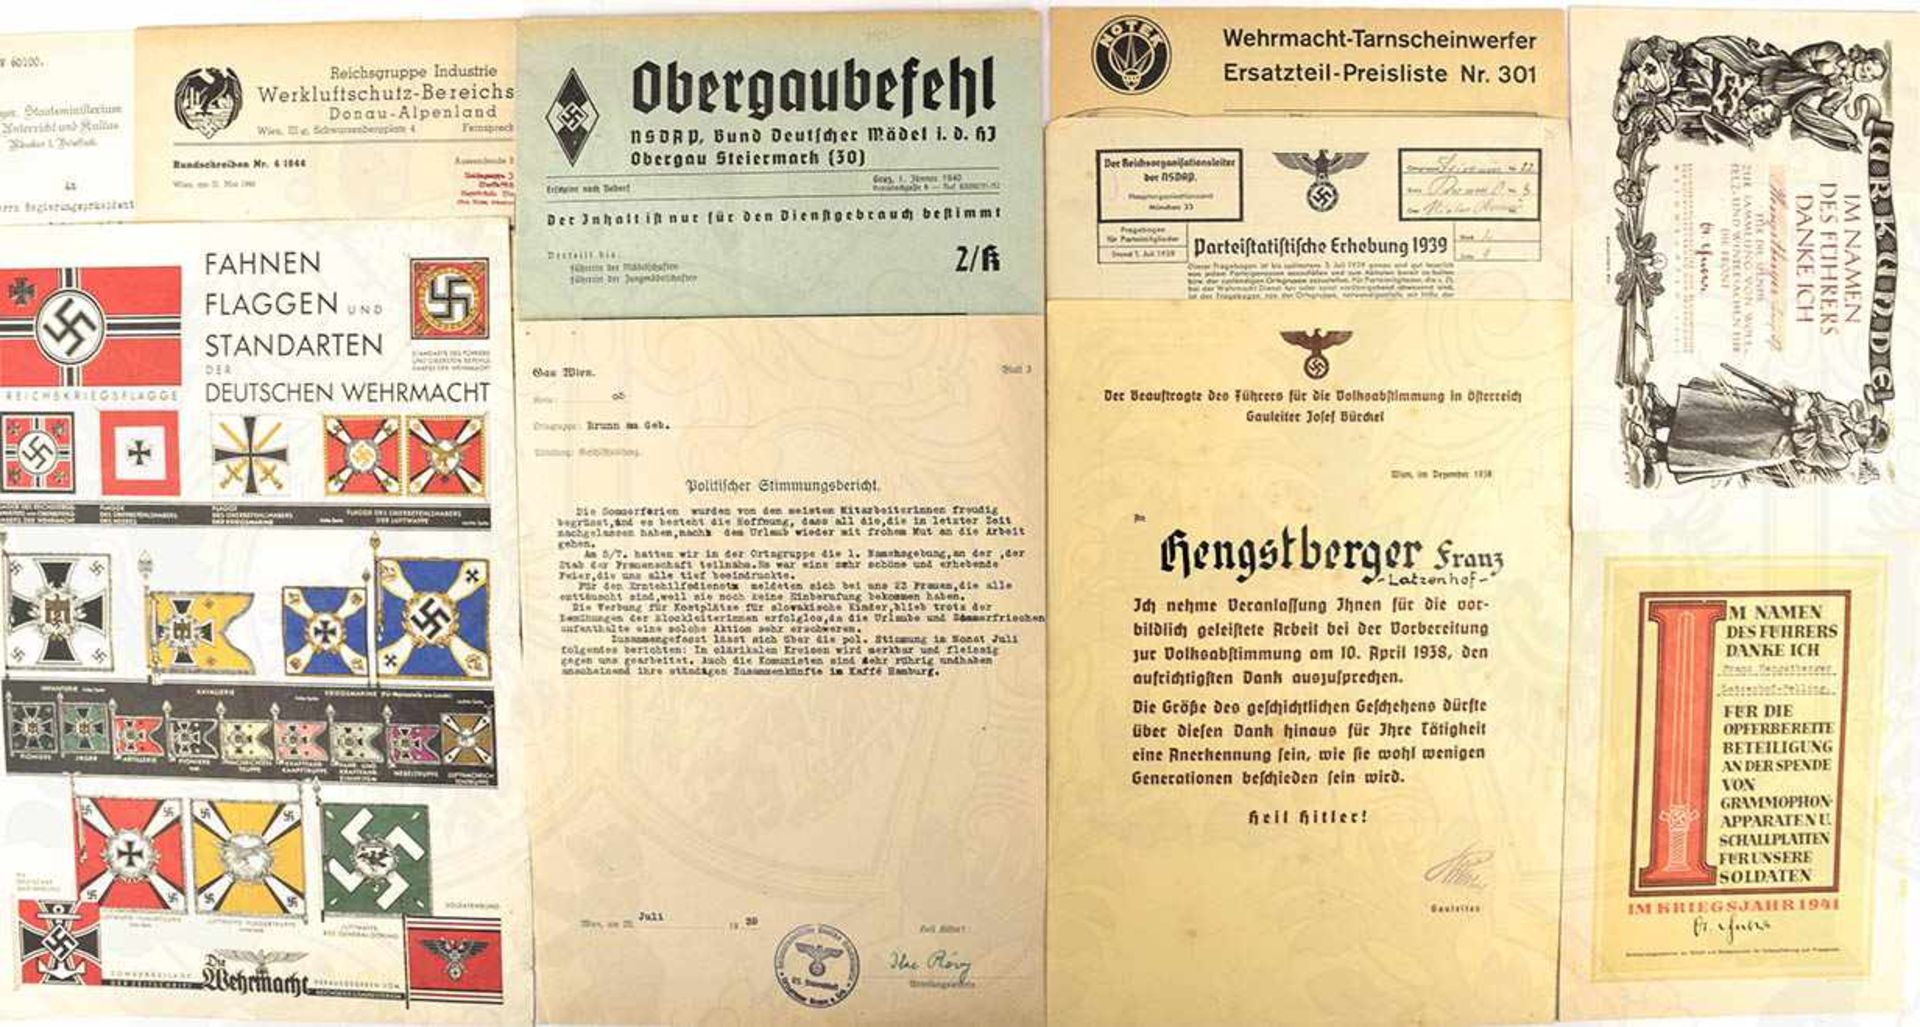 DOKUMENTENKONVOLUT, über 150 Teile, tls. militärisch, 1936-47, dabei: Spendenurkunden, Preisliste